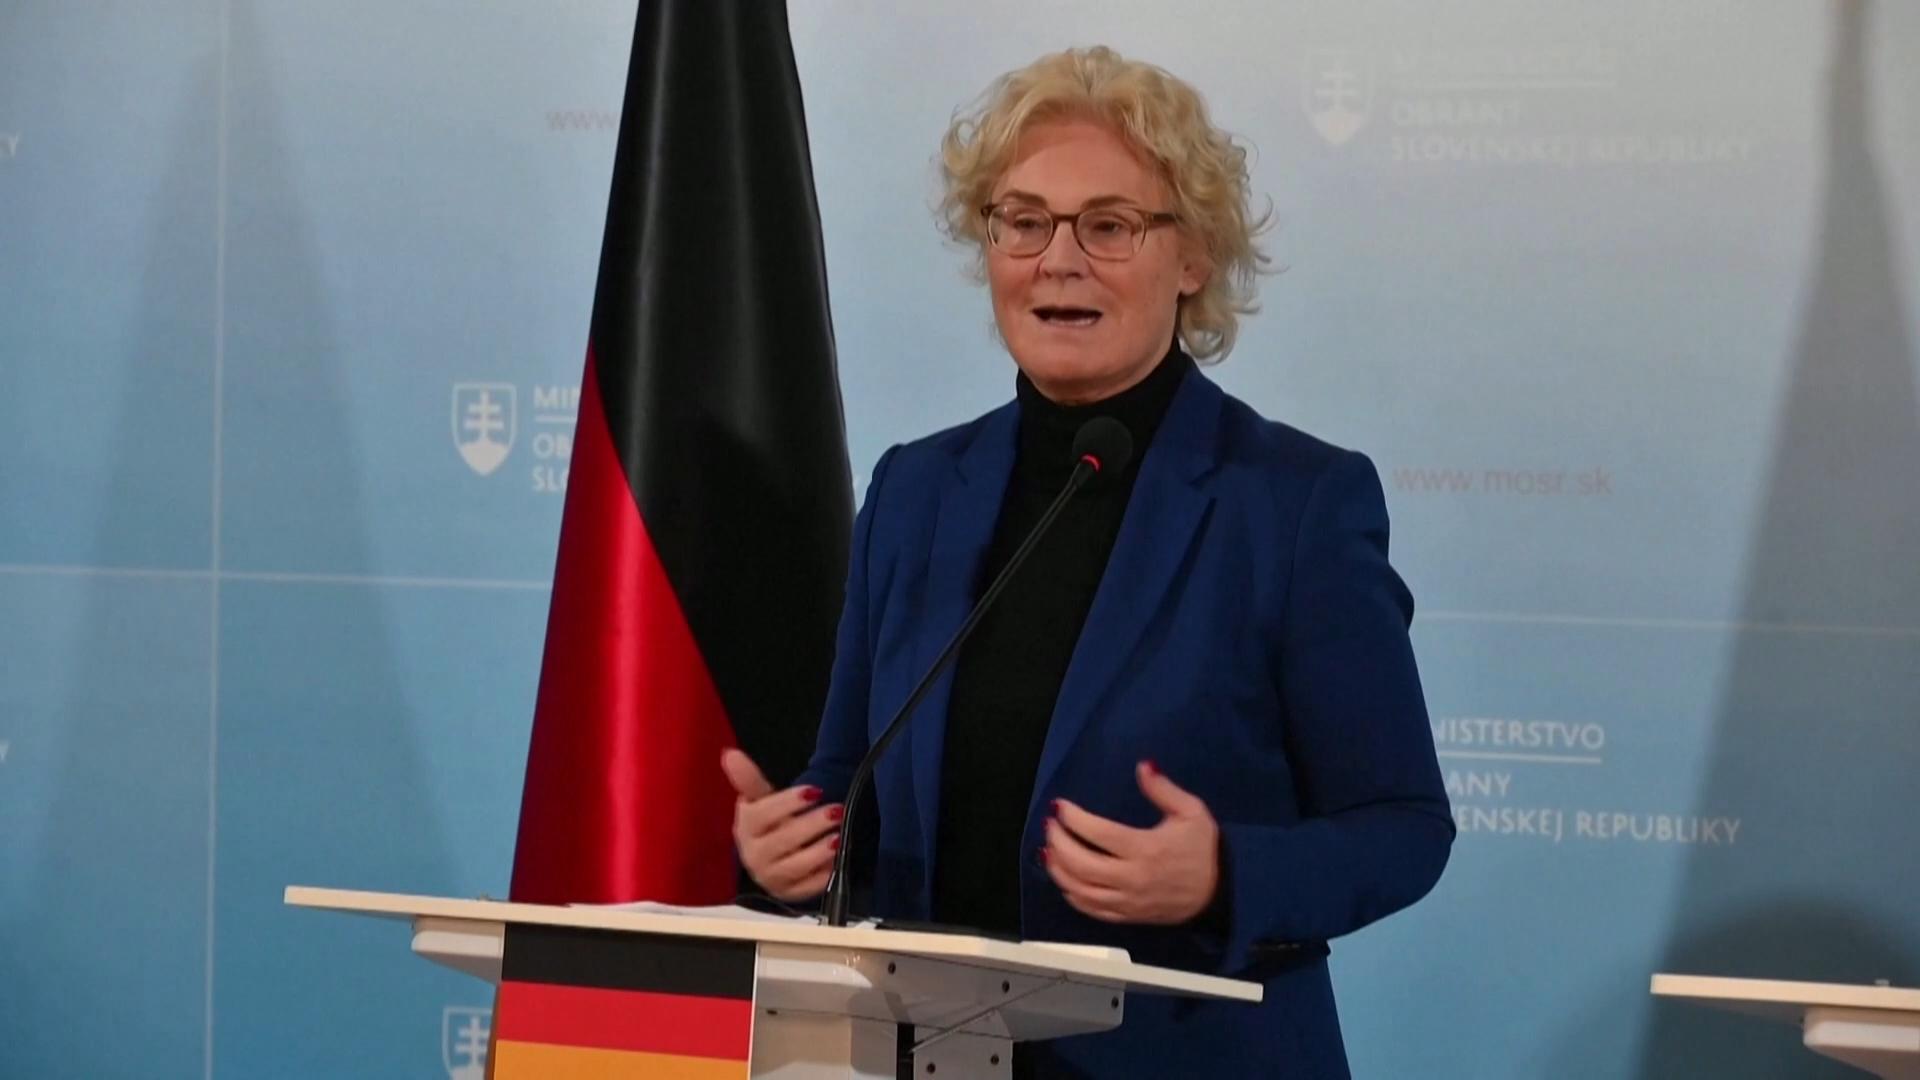 德国国防部长新年在社媒上发布的视频引起风波。画面中她站在柏林一个十字路口谈论乌克兰战争，背后却是热闹的跨年烟火。这支视频遭到严厉抨击，要求她下台的呼声越来越高。